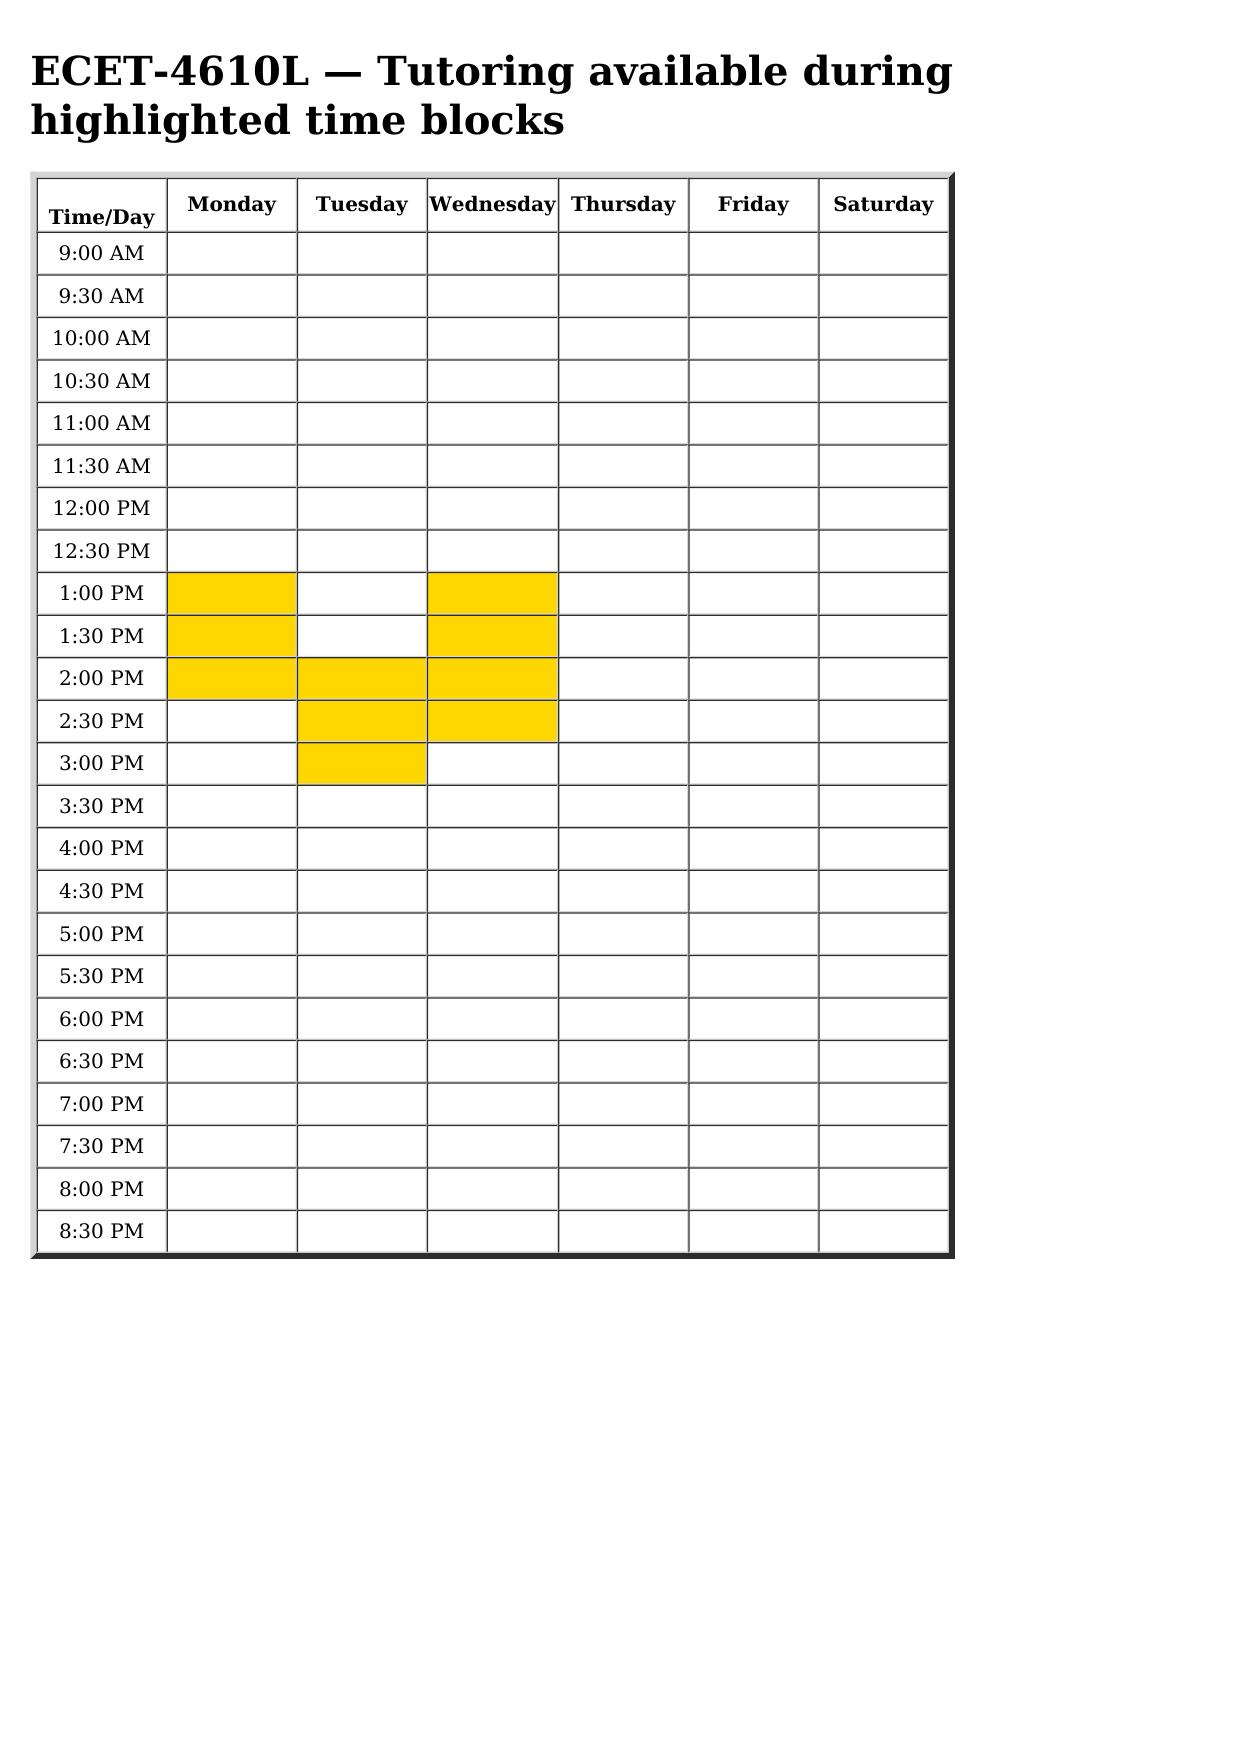 ecet 4610l schedule